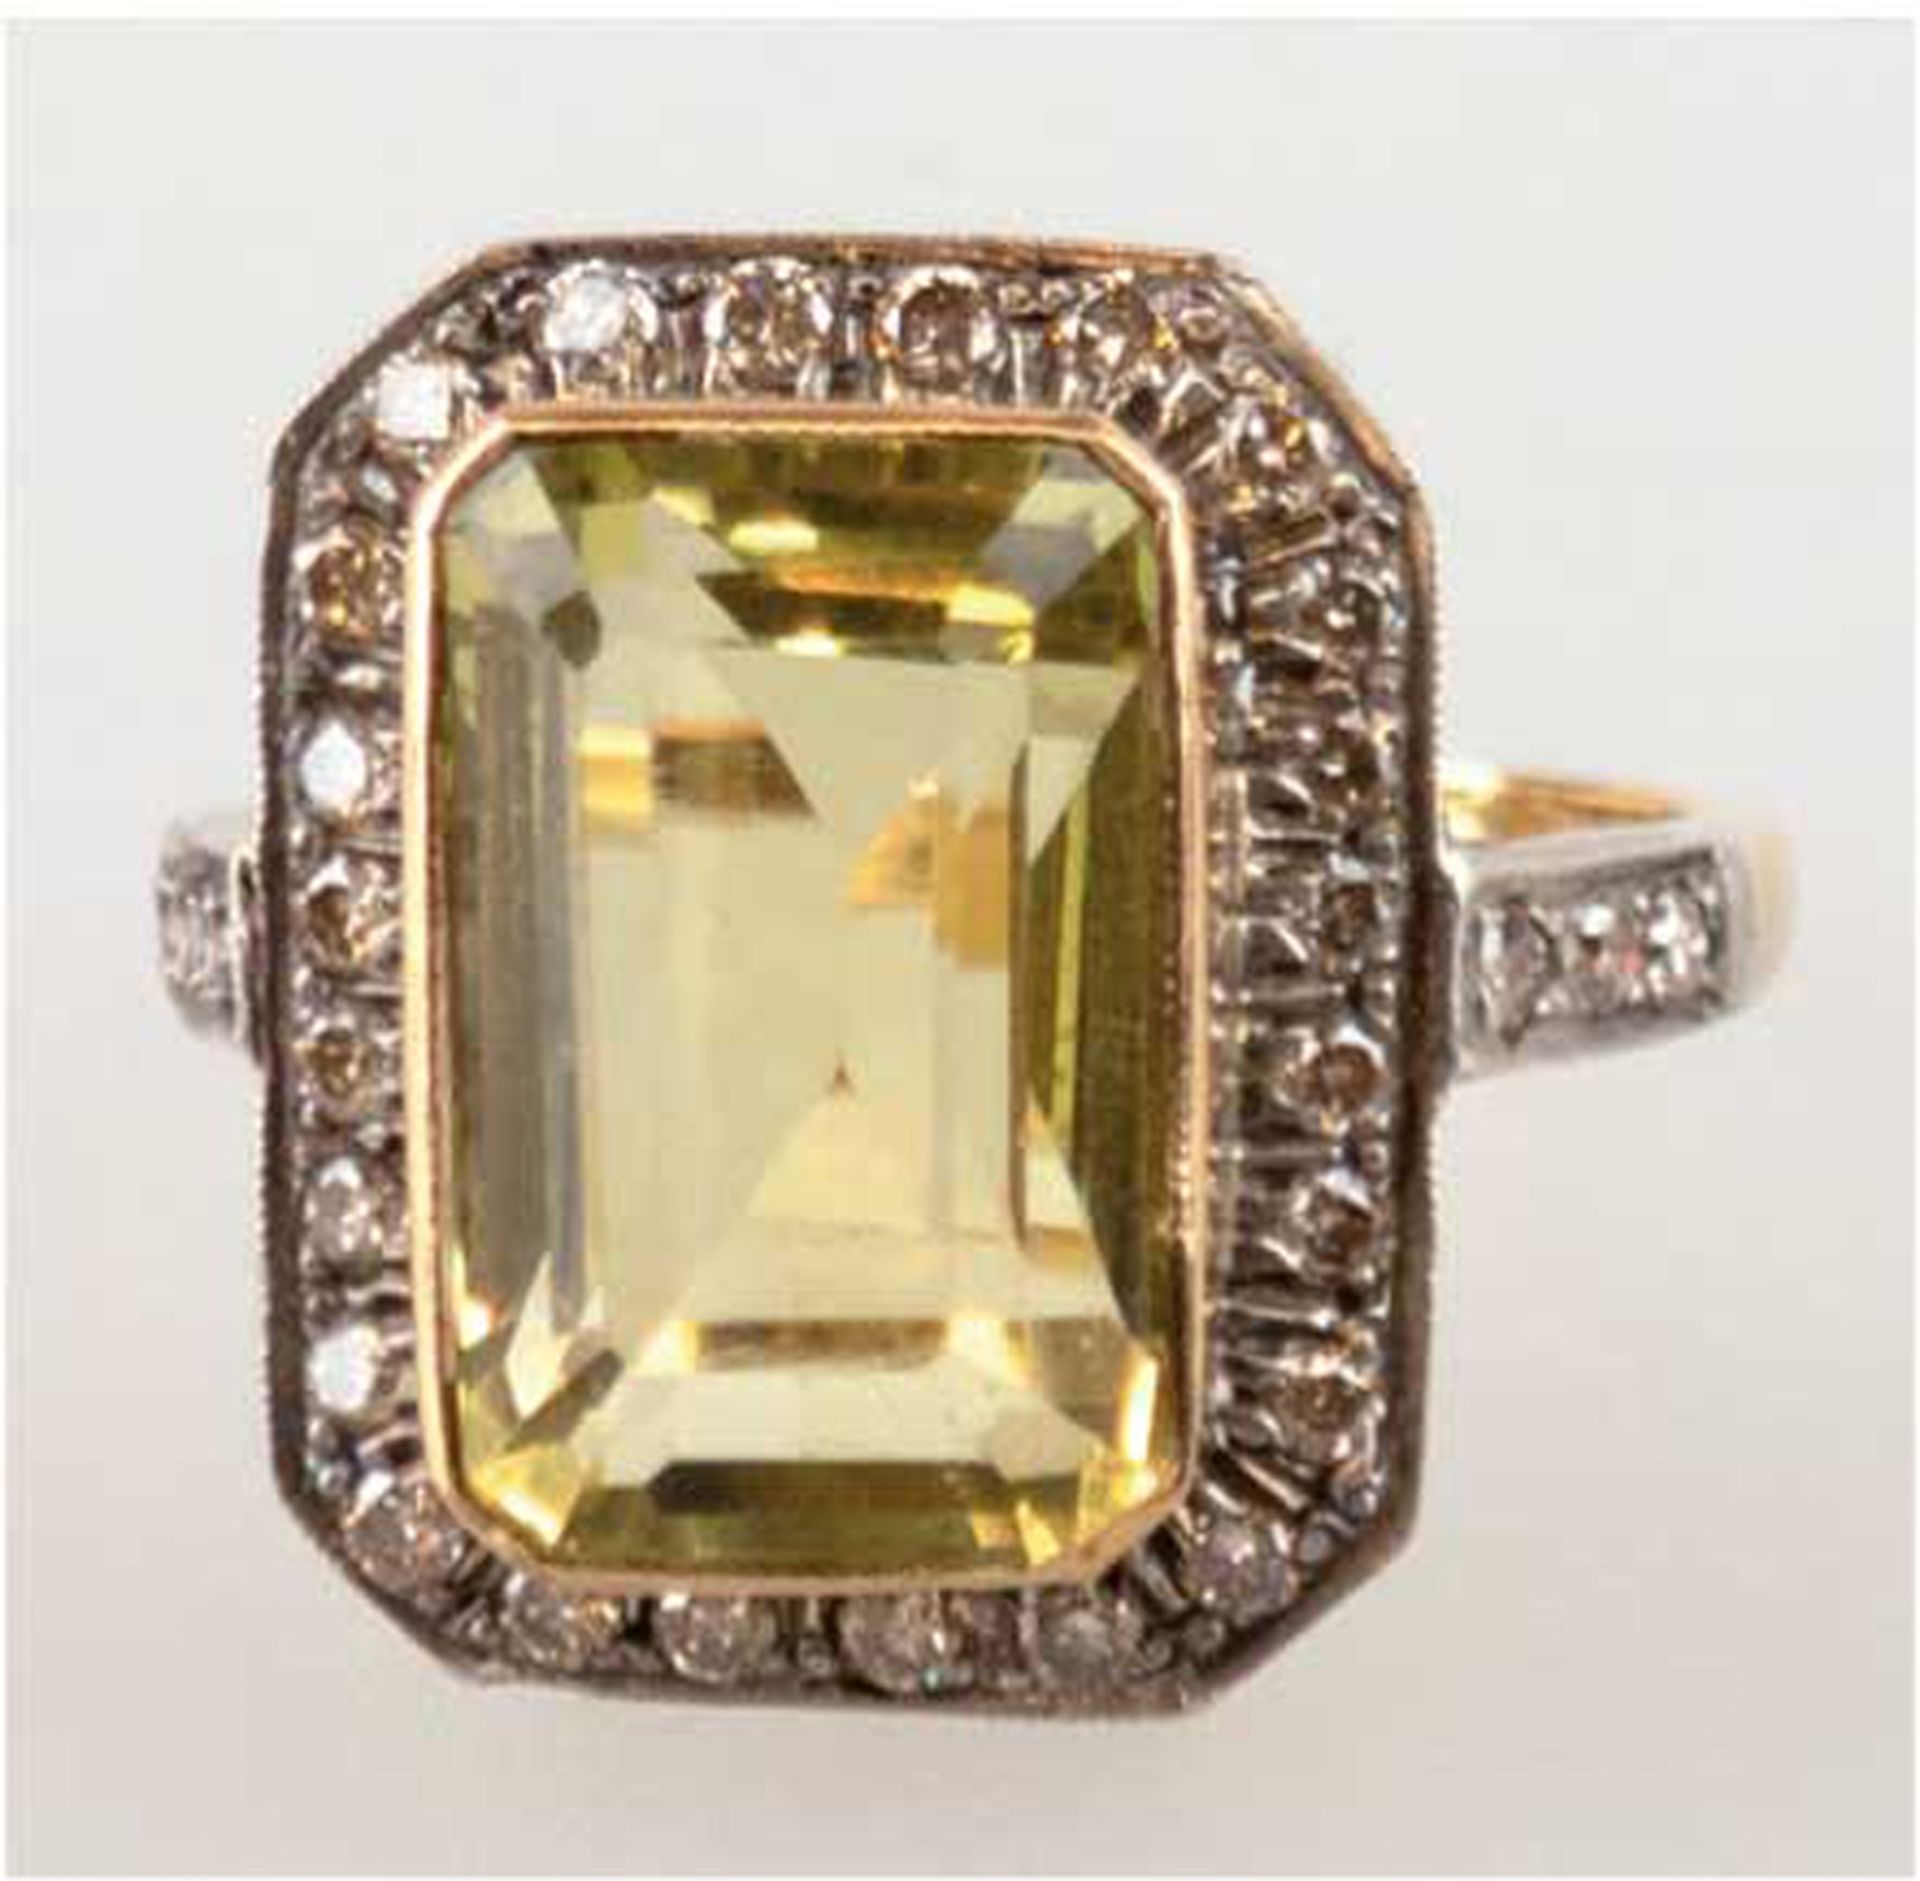 Ring, 750er GG, Gew. 6,4 g, großer, gelber Topas 7,02 ct., Brillanten 0,53 ct. in Silberfassung, RG